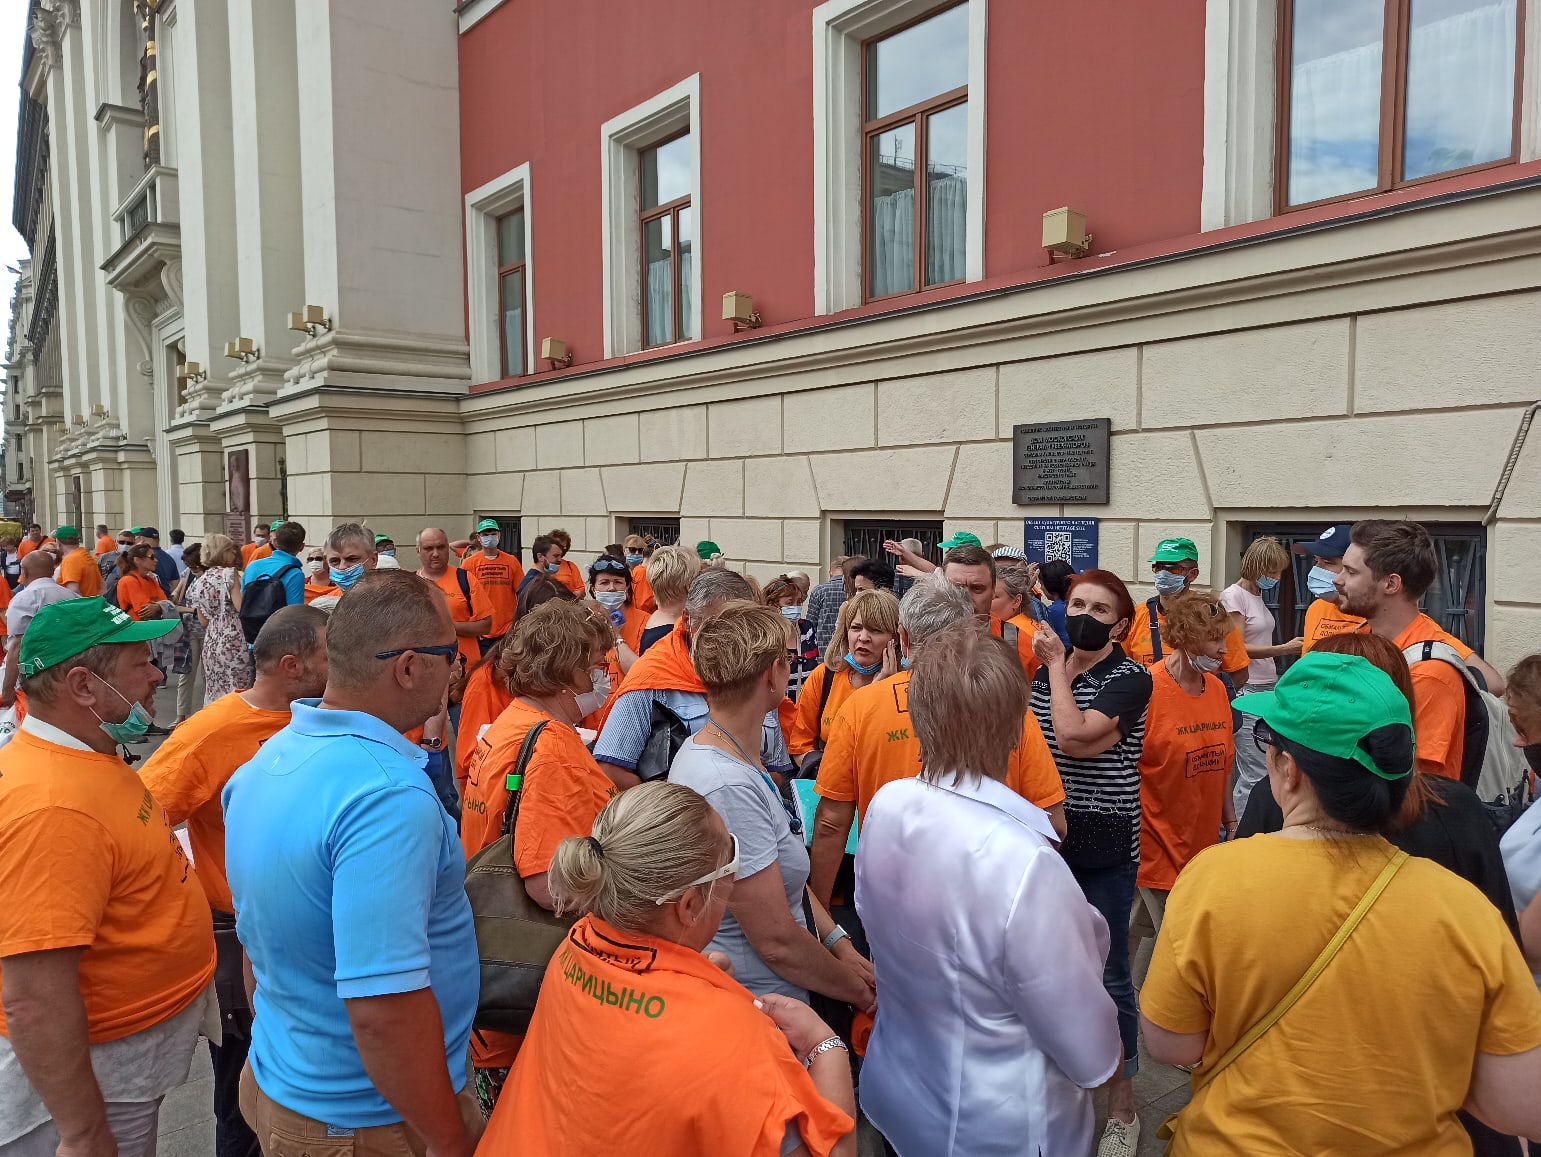 Обманутые дольщики требуют у мэрии Москвы завершить строительство ЖК «Царицыно», 11 июля 2020 года. Фото из сообщества дольщиков в VK.